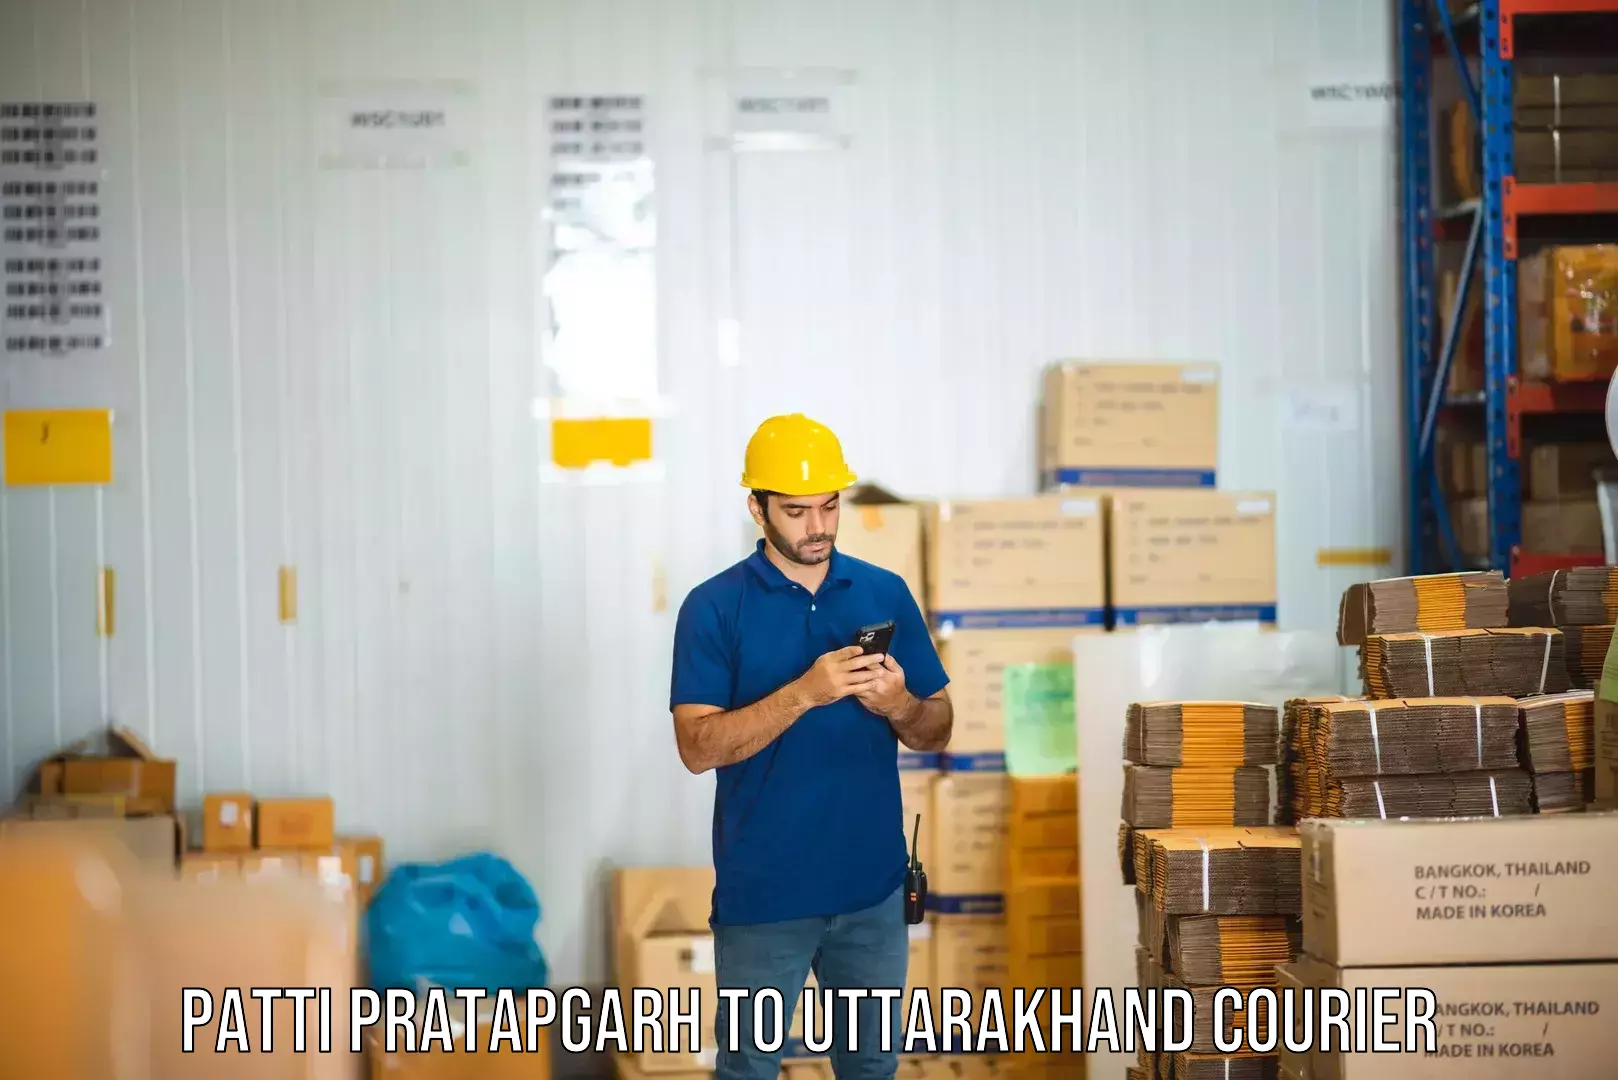 24-hour courier services Patti Pratapgarh to Tehri Garhwal